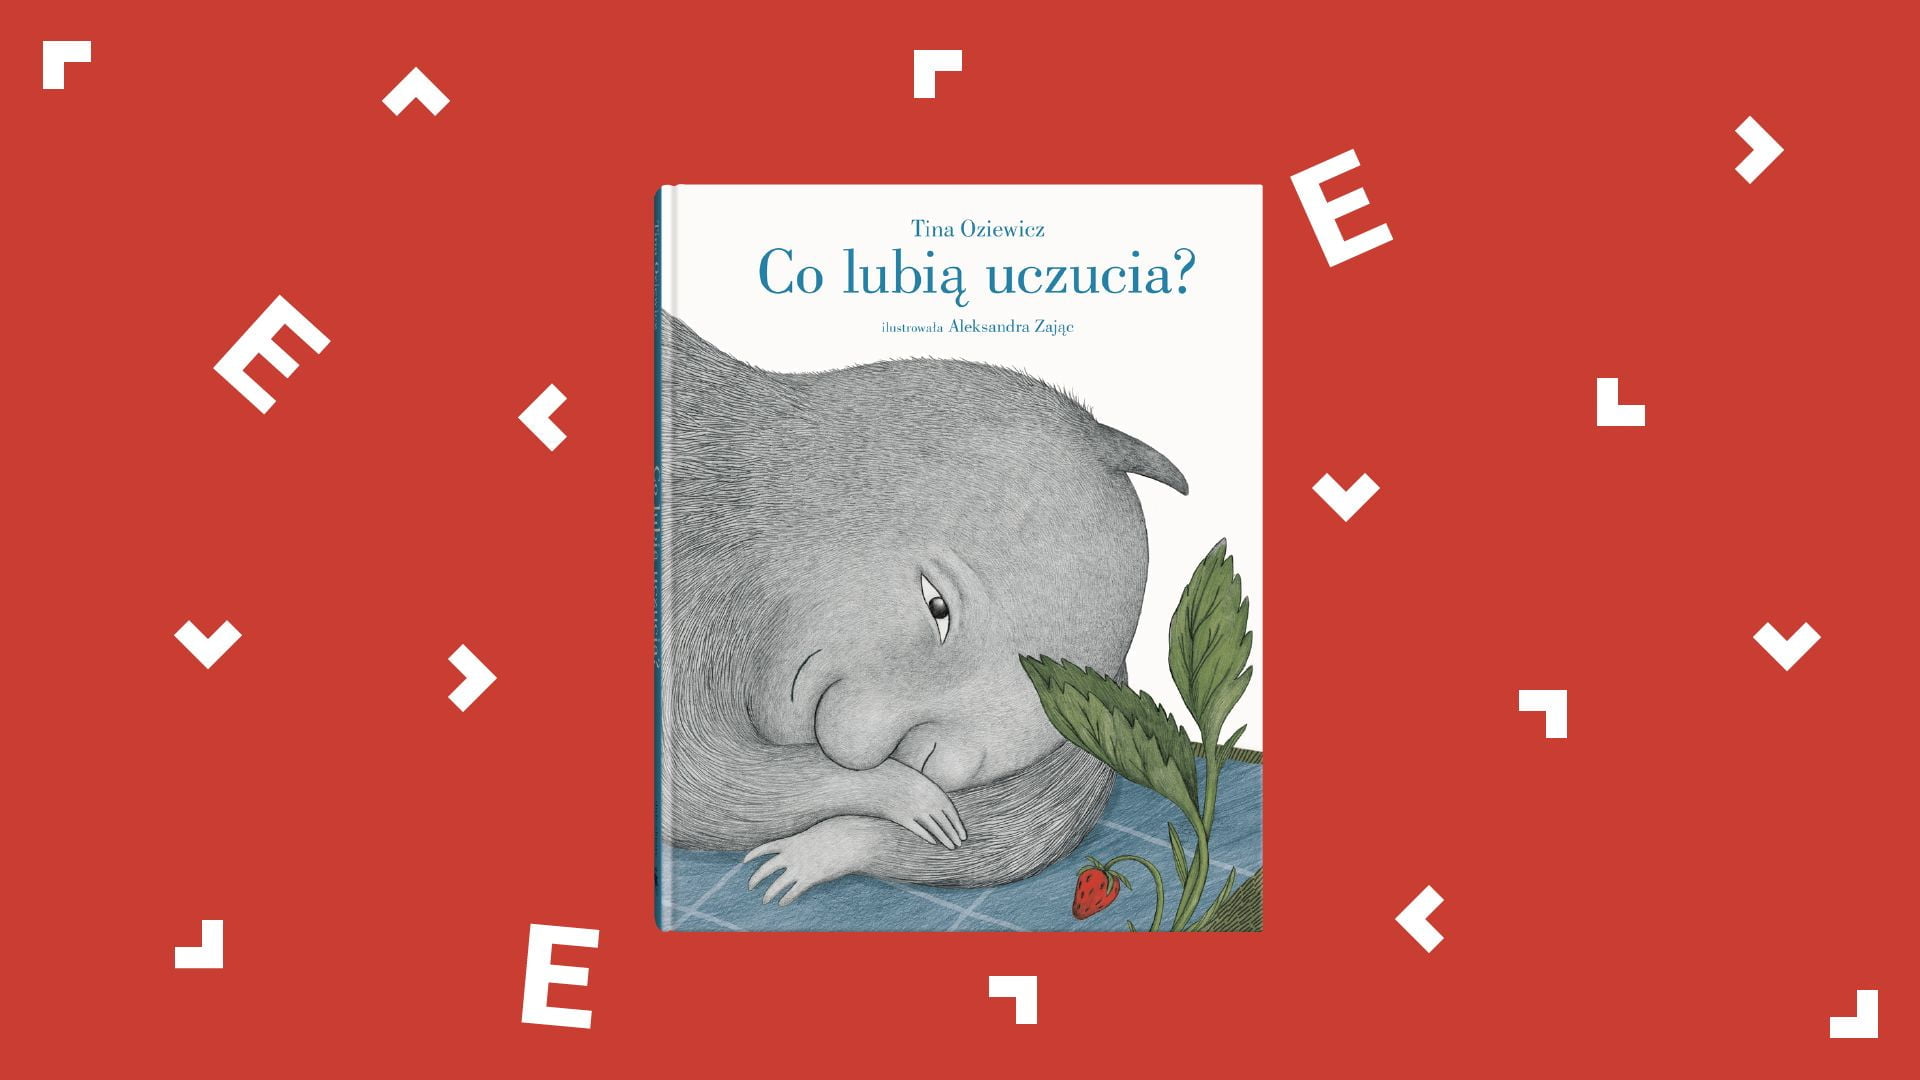 Okładka książki "Co lubią uczucia" Tiny Oziewicz. Przedstawia szarego stwora, który leży na podłodze.